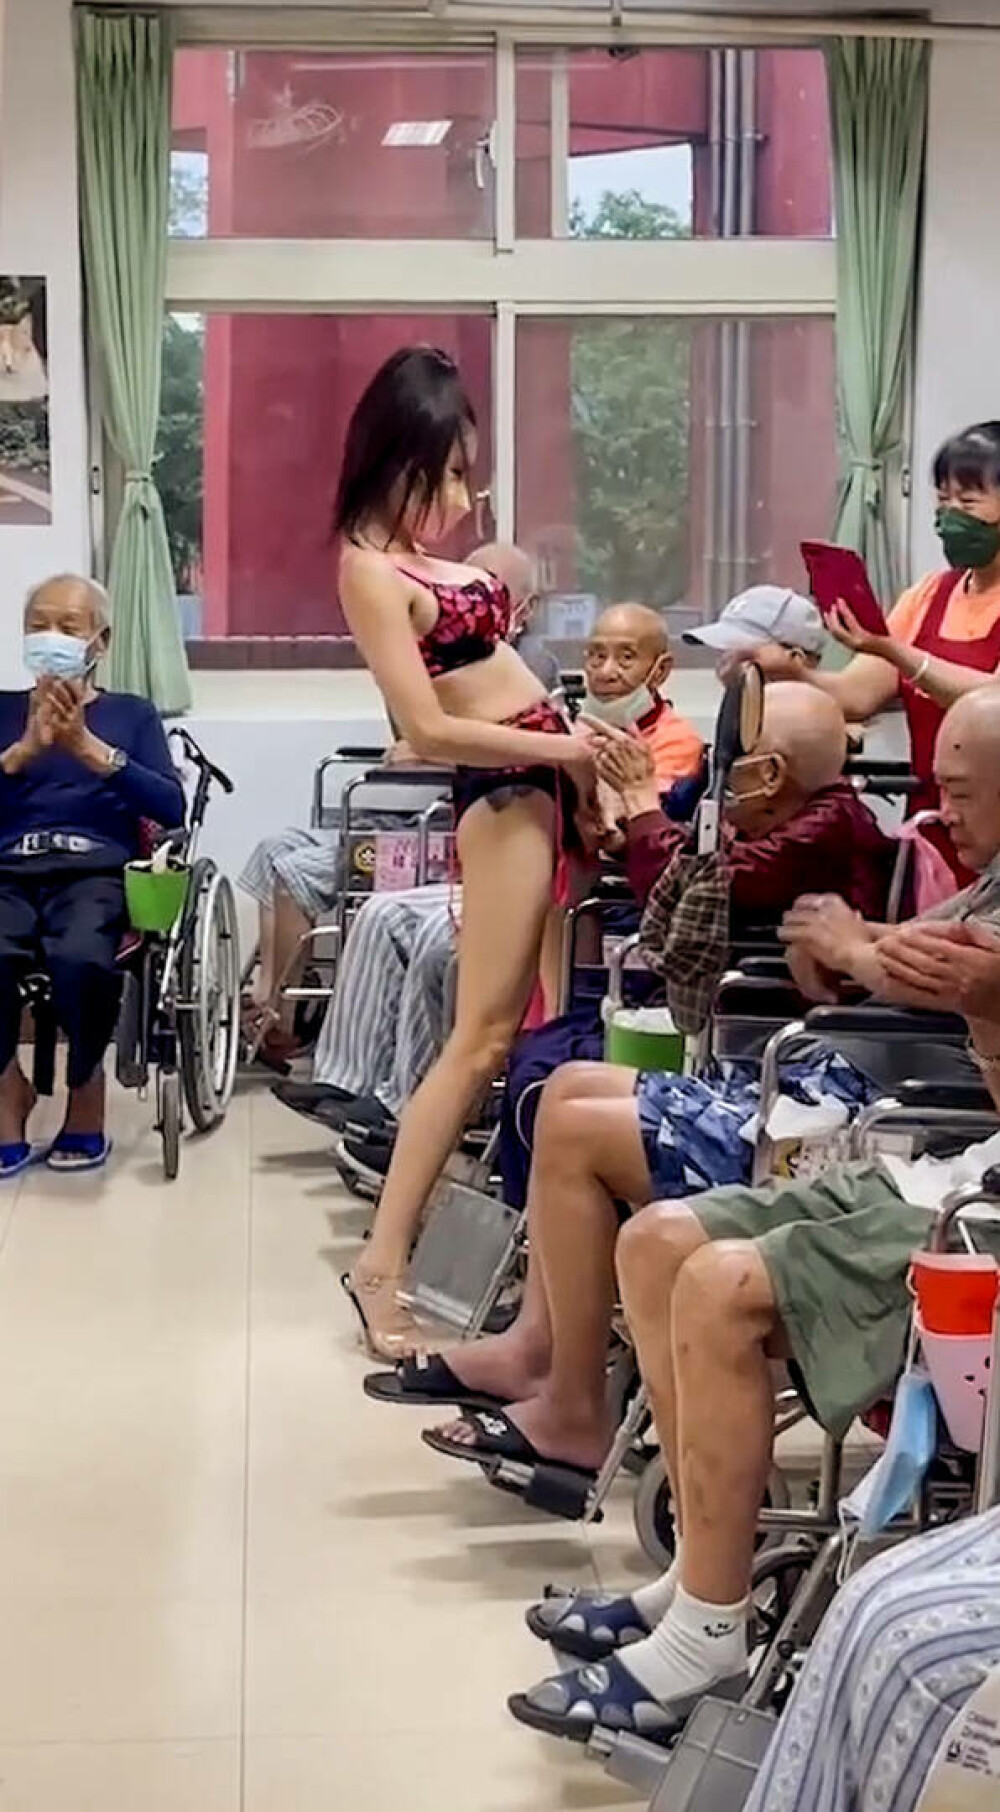 Un azil de bătrâni a adus o stripteuză pentru rezidenți. Cum au reacționat pensionarii. FOTO - Imaginea 6